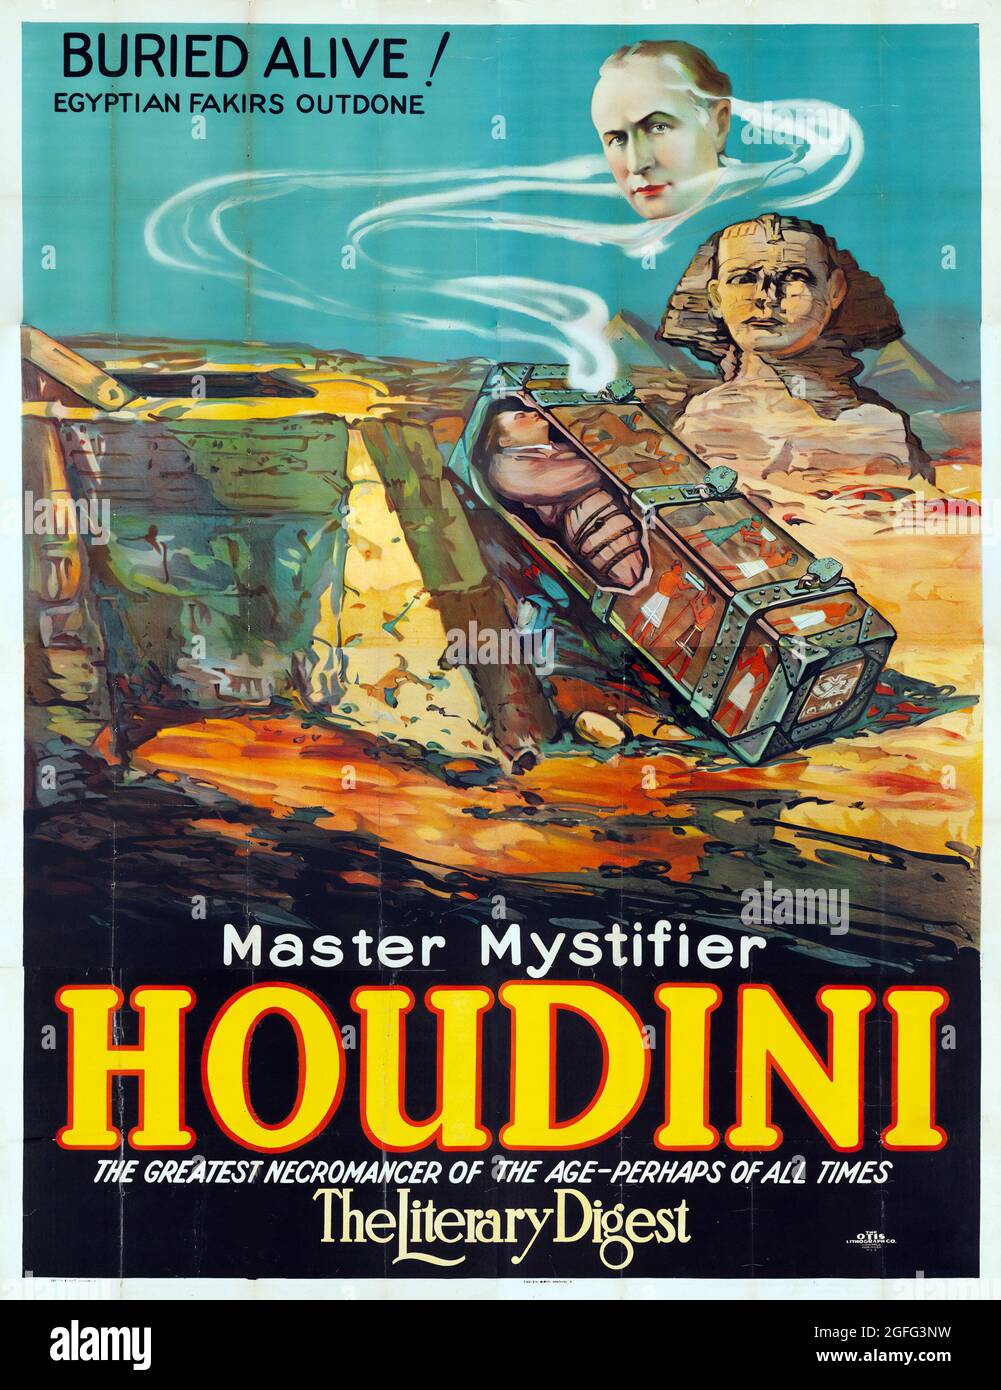 Maître mystifier Houdini 'enterré vivant!' (Otis Litho, 1926) – les fakirs égyptiens sont sortis. Banque D'Images